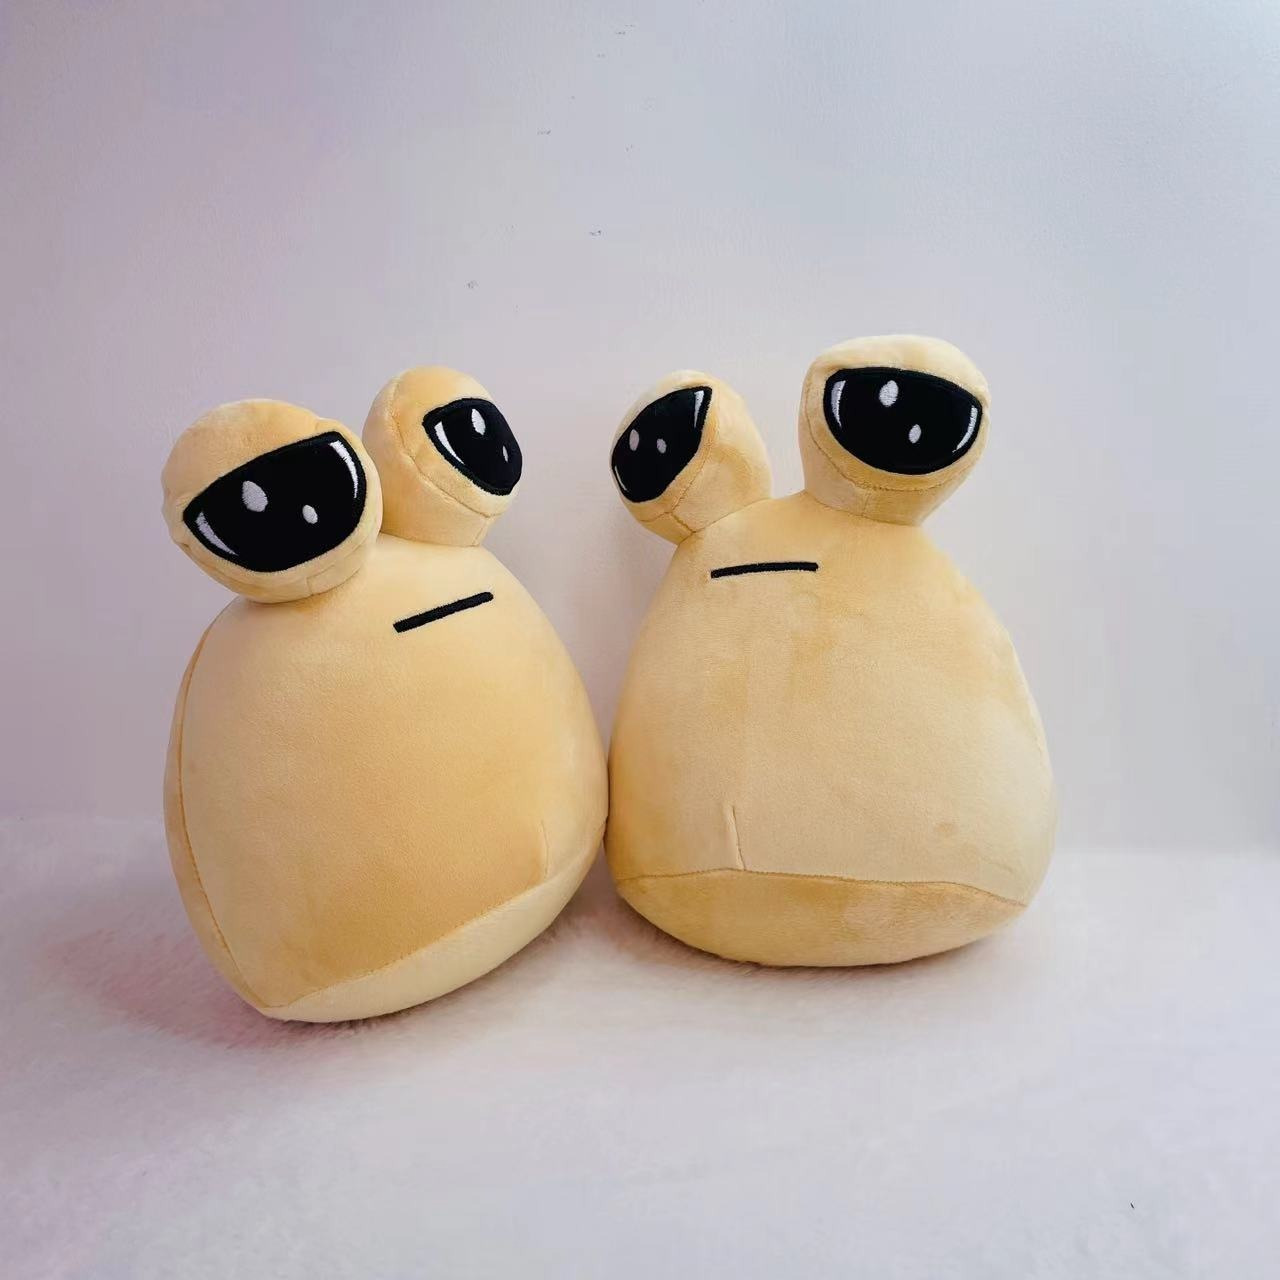 My Pet Alien Pou Plush Toy diburb Emotion Alien Plushie Stuffed Animal Doll  1pcs 